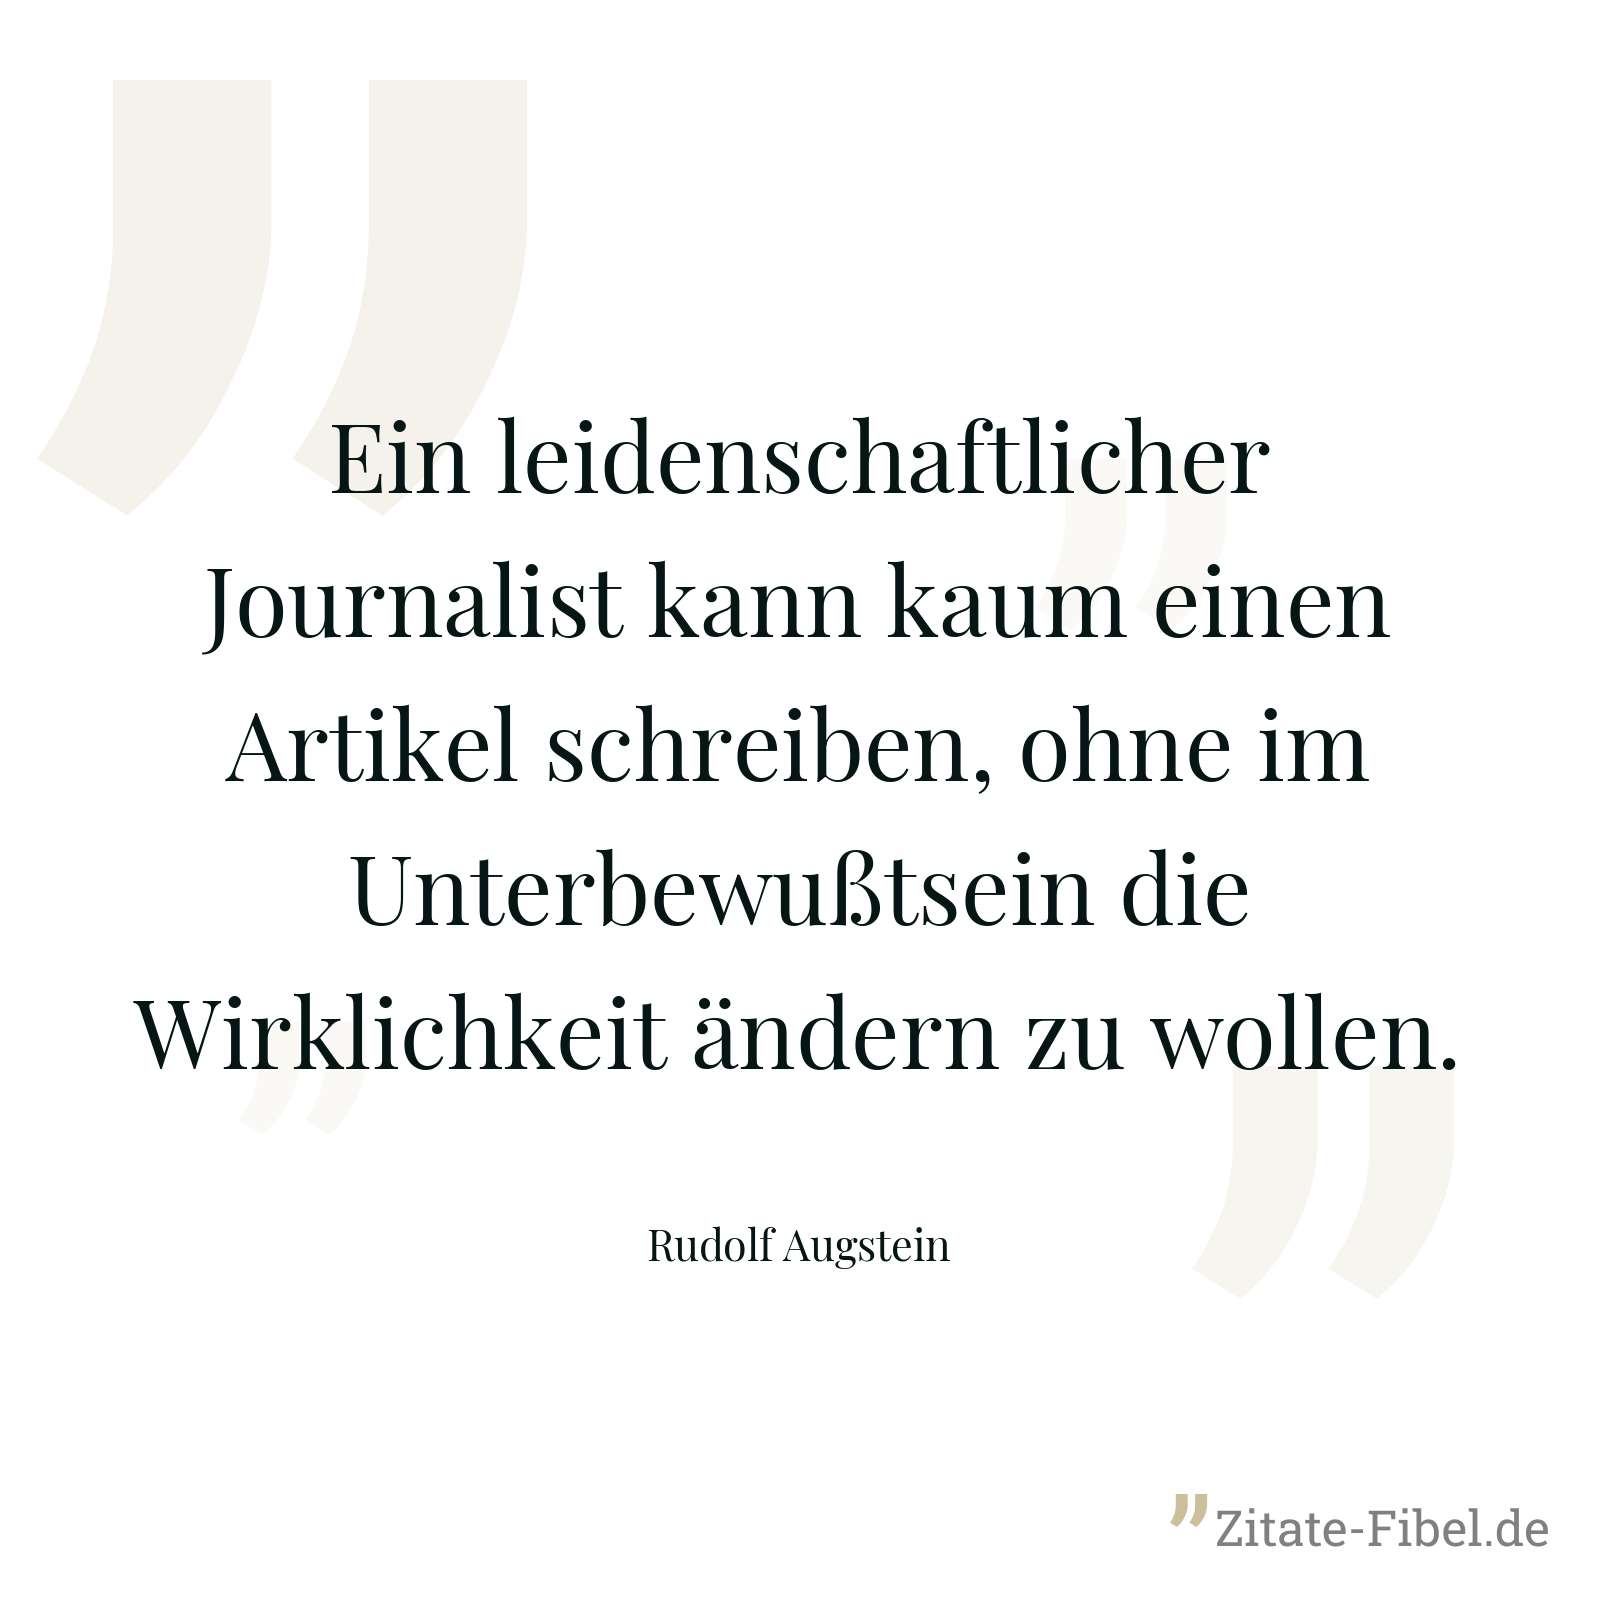 Ein leidenschaftlicher Journalist kann kaum einen Artikel schreiben, ohne im Unterbewußtsein die Wirklichkeit ändern zu wollen. - Rudolf Augstein